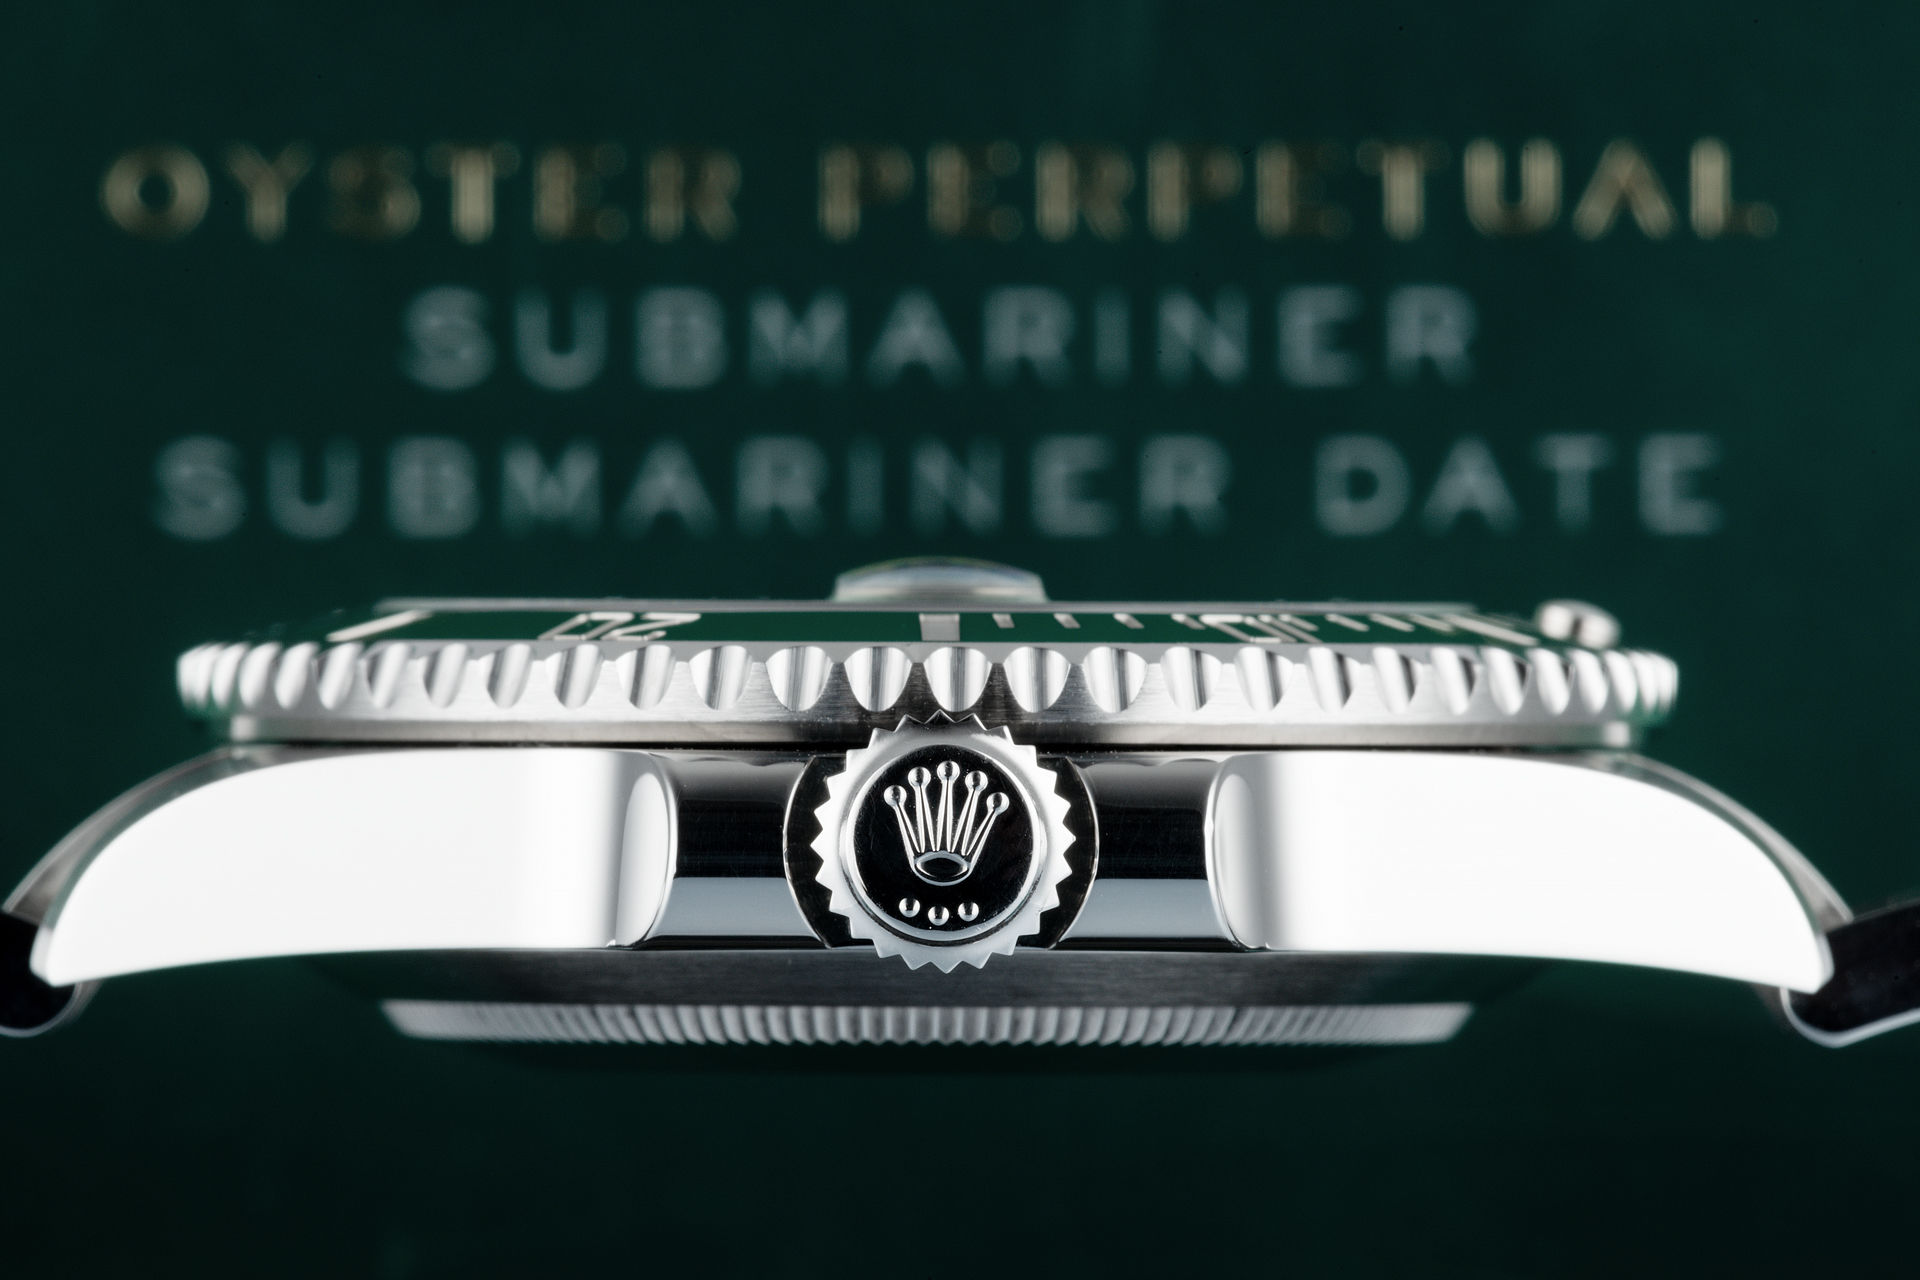 ref 116610LV | 5-year Warranty Box & Certificate | Rolex Submariner Date